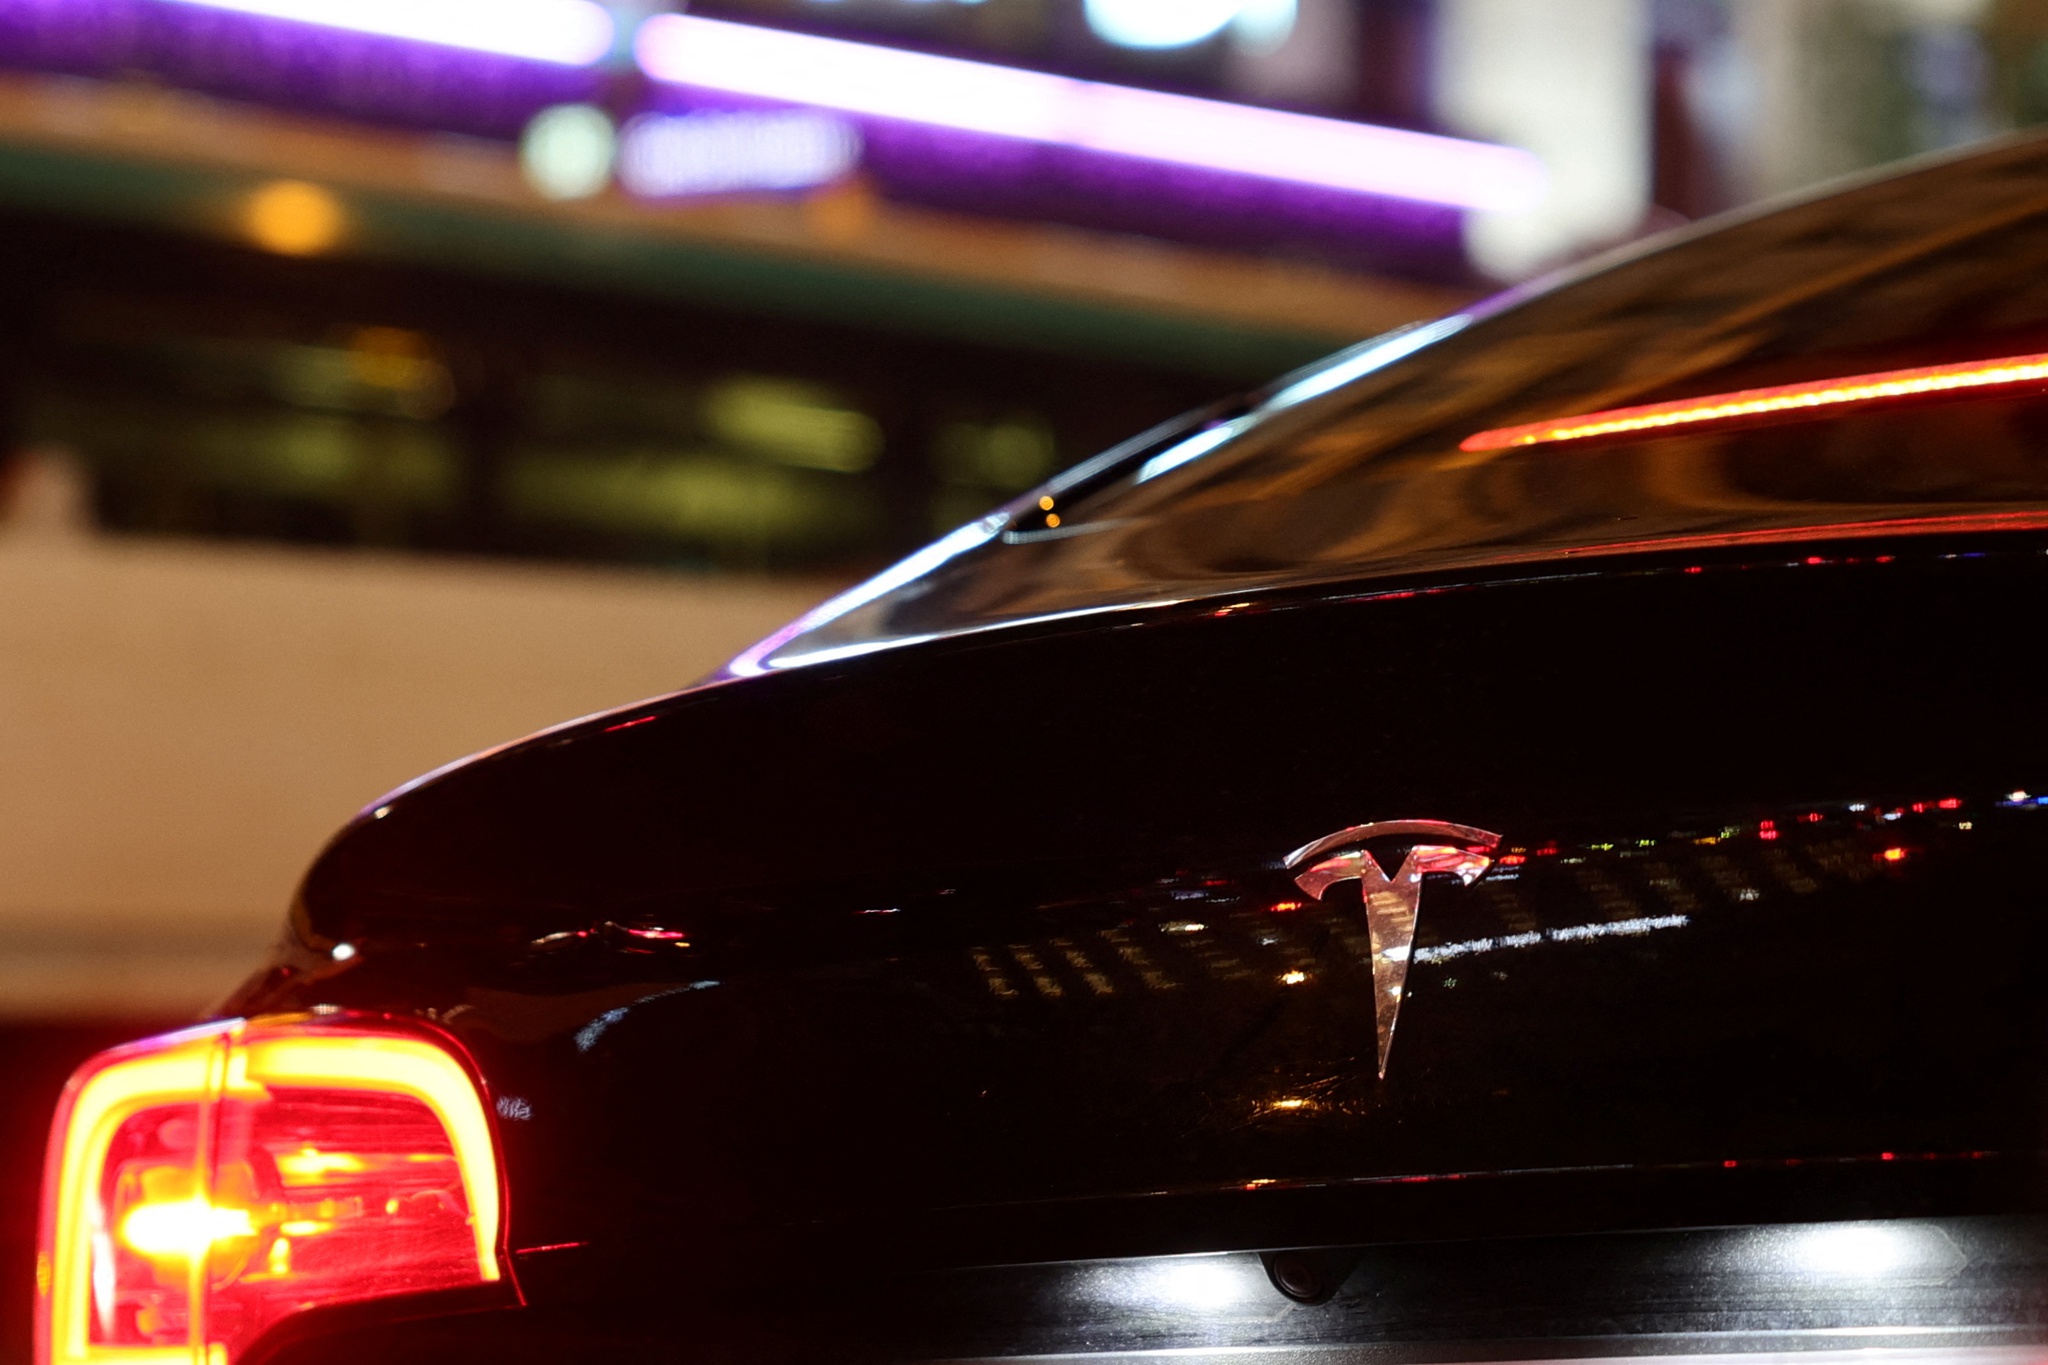 Une compagnie de taxi parisienne gèle la flotte de Teslas après un accident mortel.  La société de Musk affirme qu’il n’y a eu aucune défaillance technique |  Enquête